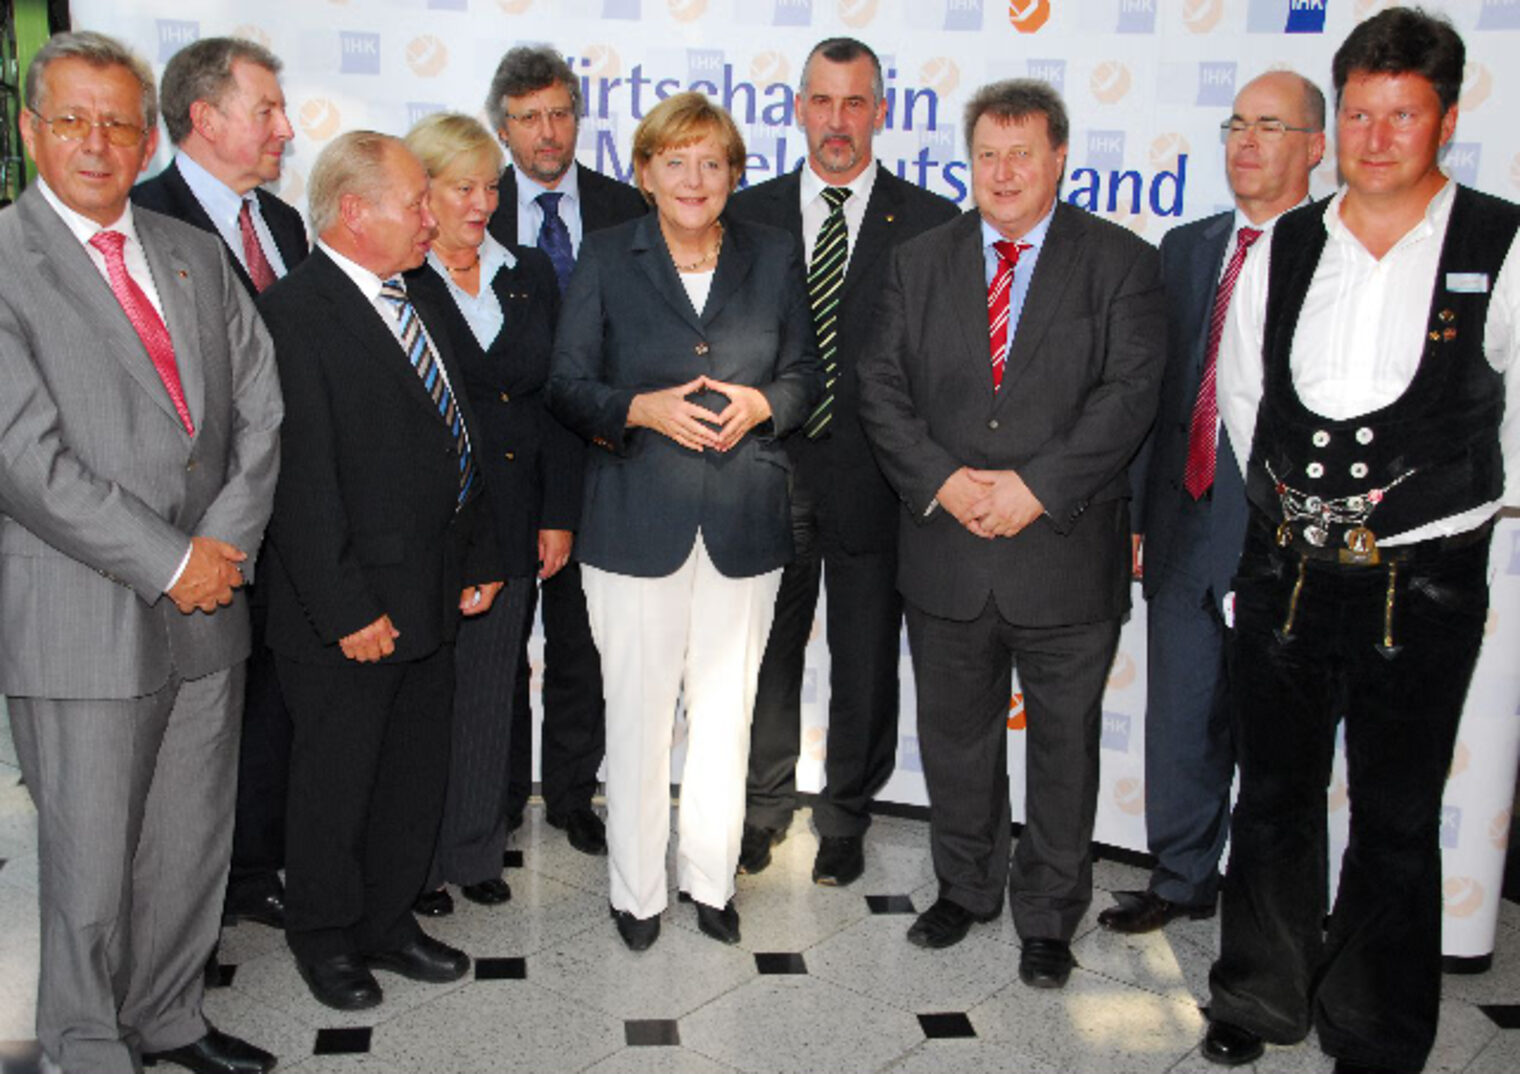 Mitteldeutsche Wirtschaft im Dialog mit der Bundeskanzlerin am 3. Juli 2009. Bild: IHK Halle-Dessau